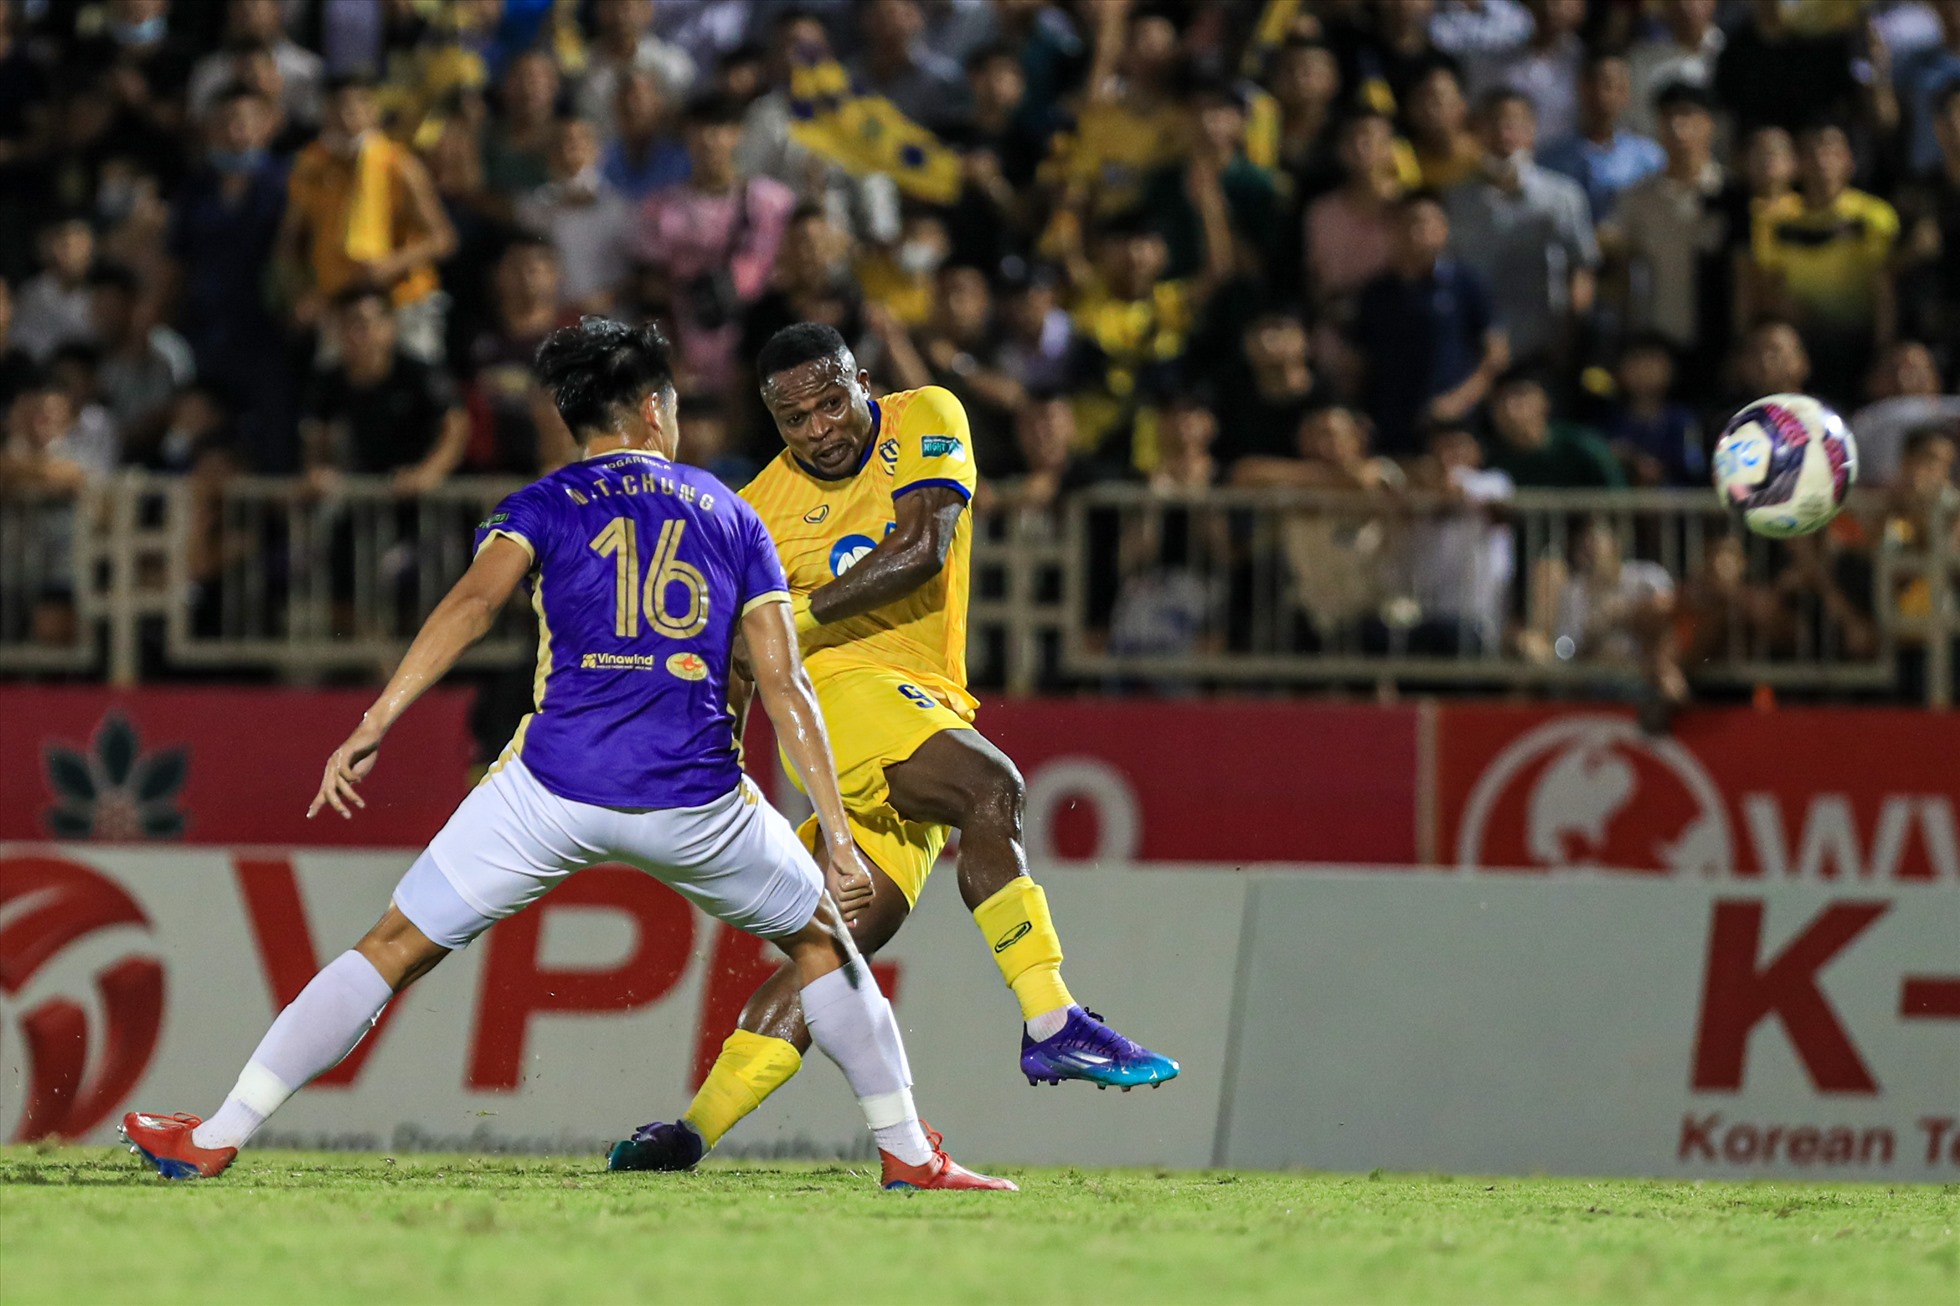 Bước sang hiệp hai trận đấu, Sông Lam có một số cơ hội giải quyết trận đấu với pha dứt điểm đập xà ngang của Oseni.